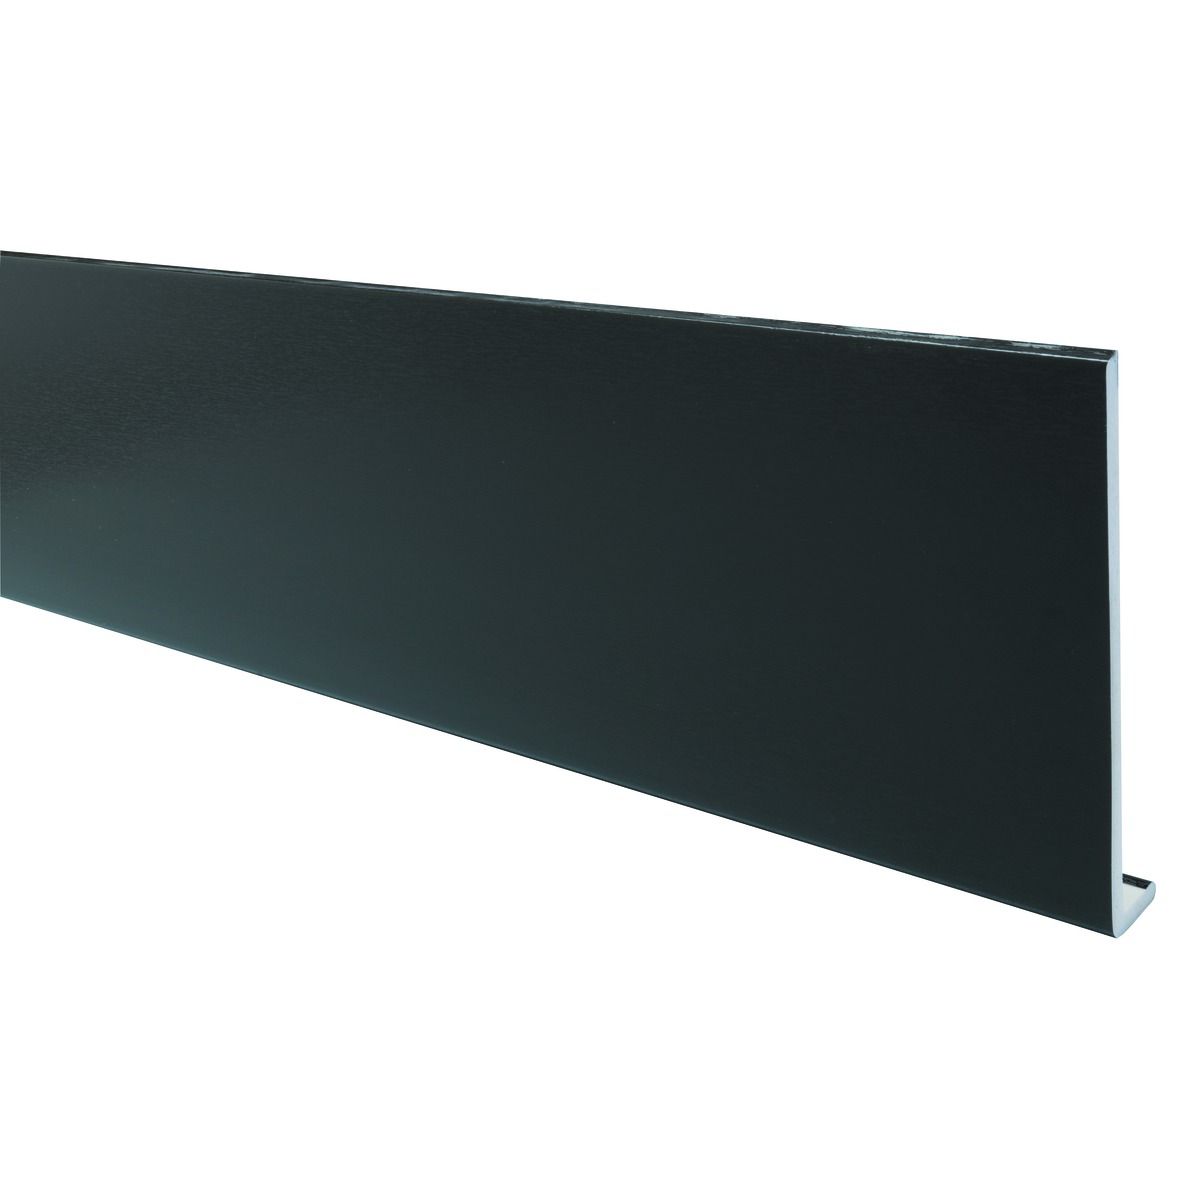 Image of Wickes PVCu Black Fascia Board 9 x 225 x 2500mm